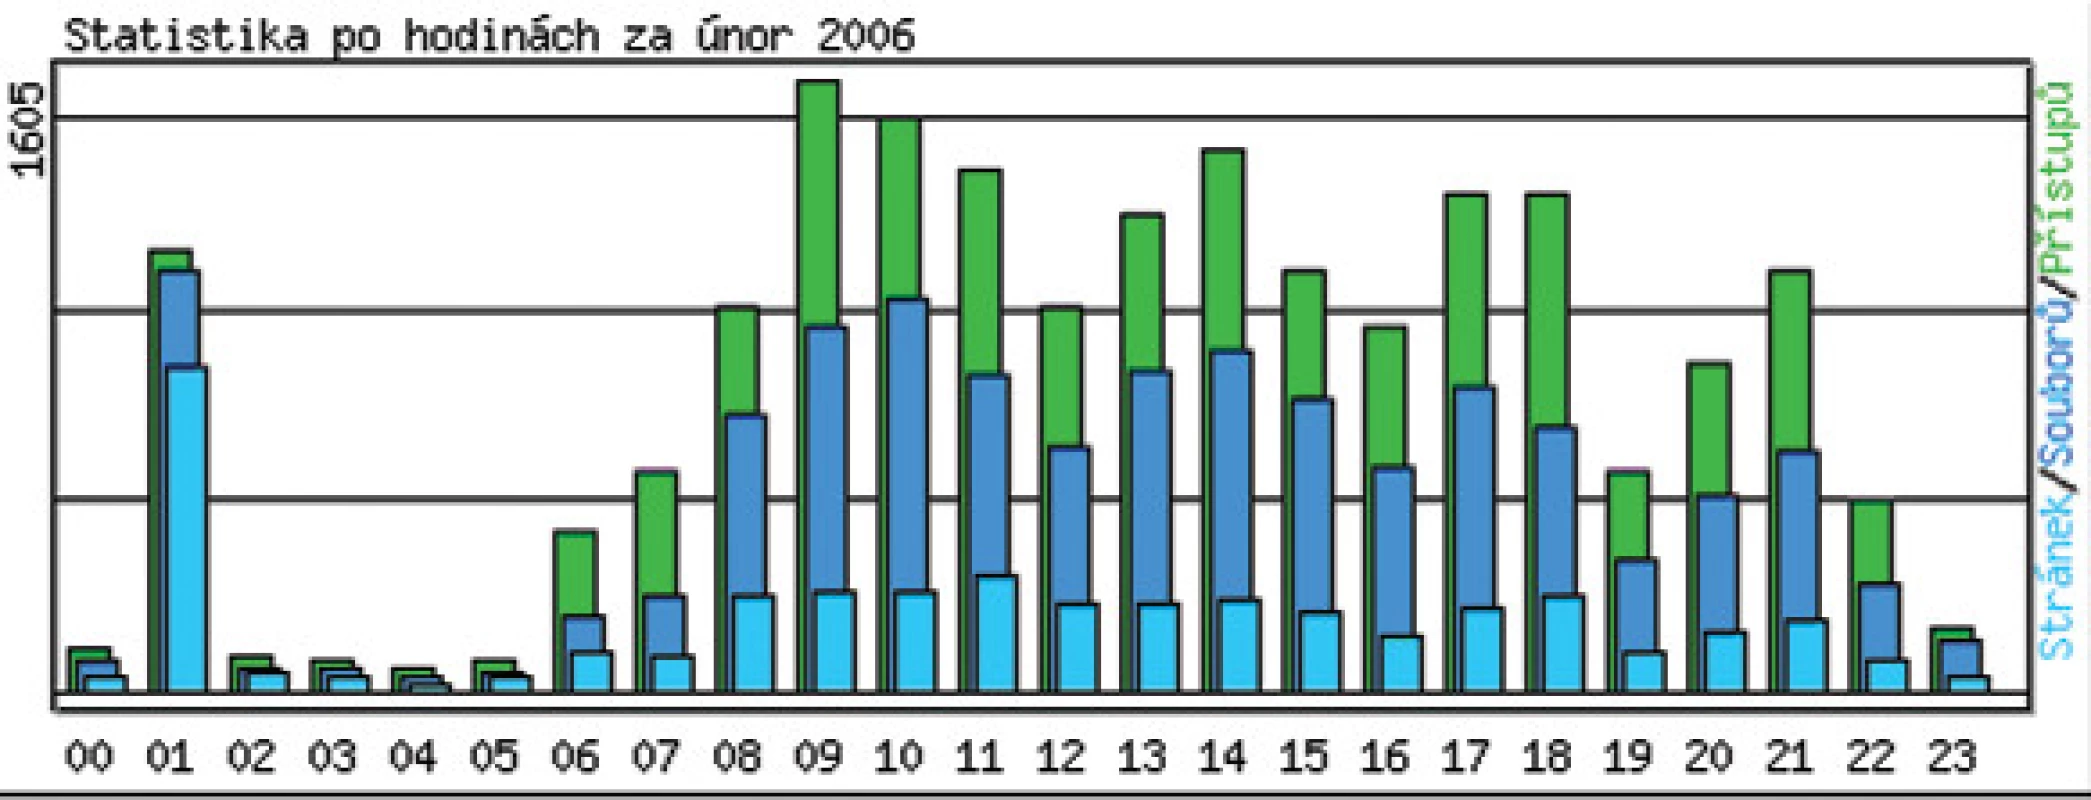 Hodinová statistika v únoru 2006.